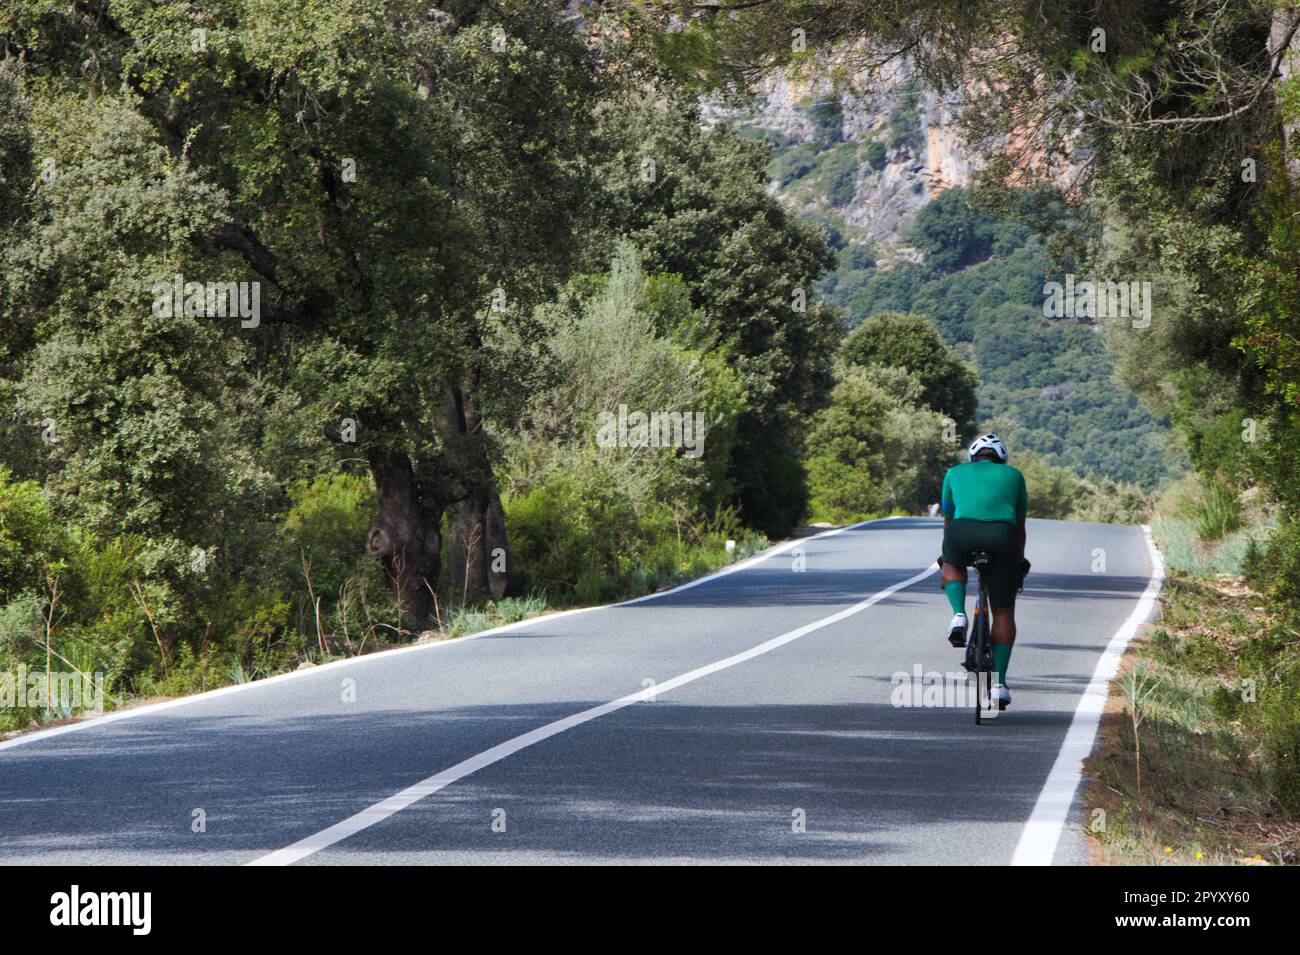 À vélo en Espagne (Mallorca) Banque D'Images